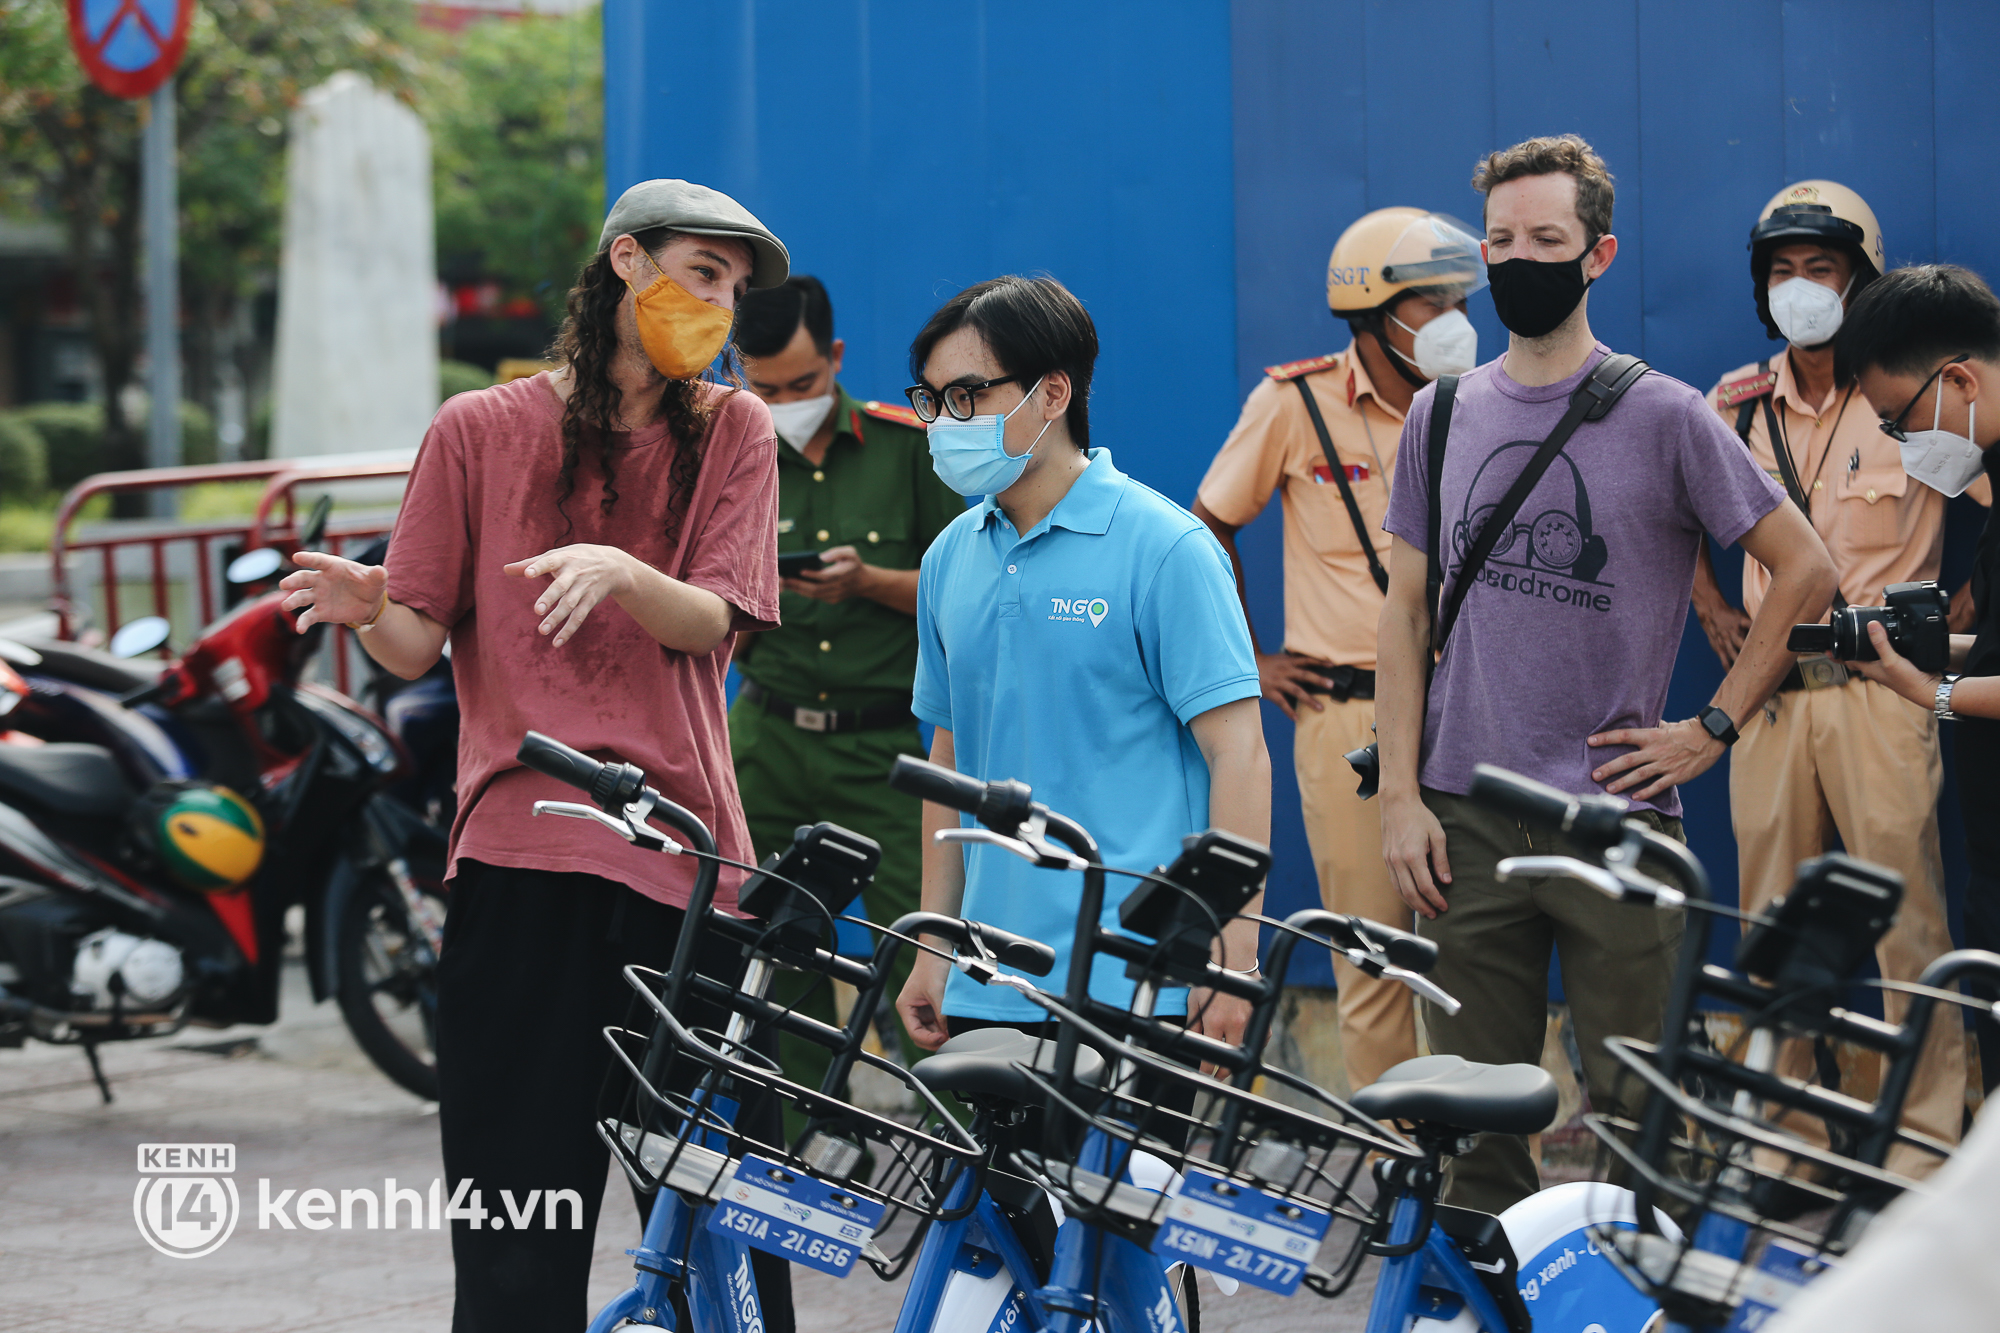 Xe đạp công cộng có tính phí ở TP.HCM chính thức hoạt động: Bạn trẻ hào hứng bỏ tiền thuê đi dạo ngắm cảnh - Ảnh 9.